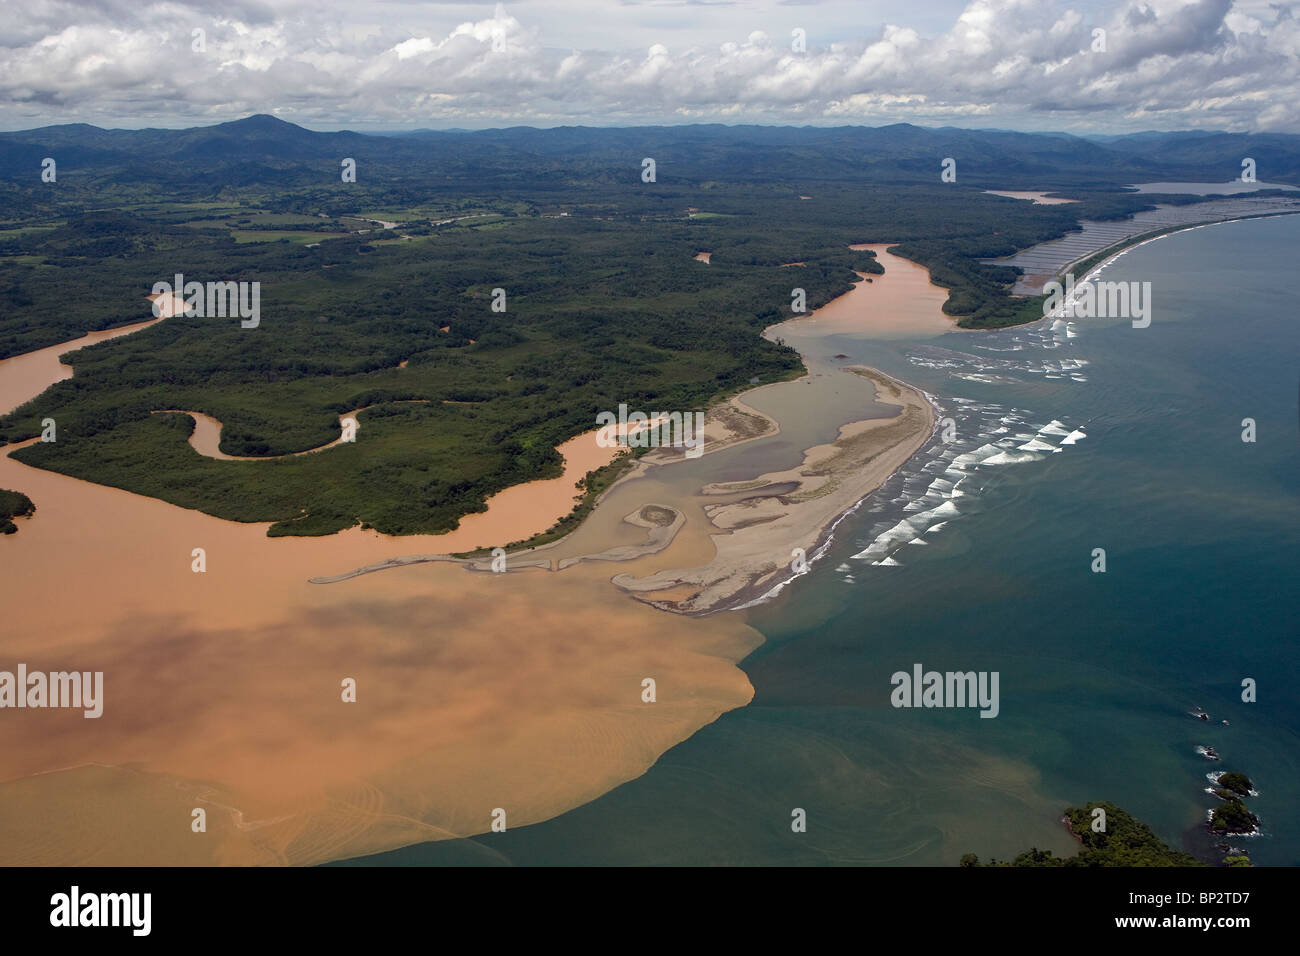 Vue aérienne au-dessus de la rivière boueuse remplie de sédiments qui se jettent dans l'océan Pacifique République du Panama Banque D'Images